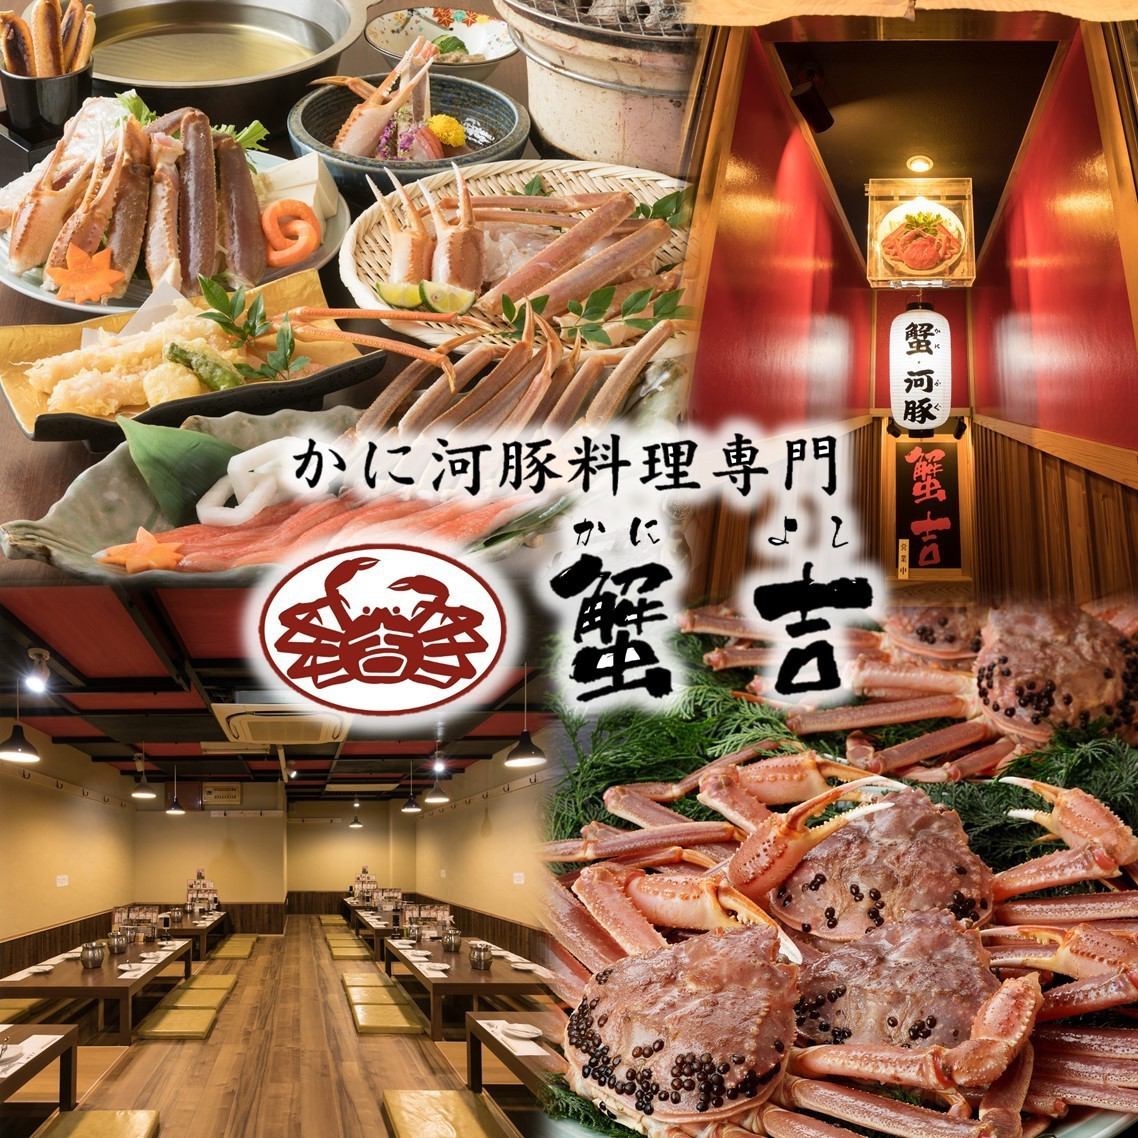 距離難波站步行1分鐘的絕佳地點！在私人日式房間的螃蟹和河豚專門店度過奢華的時光...